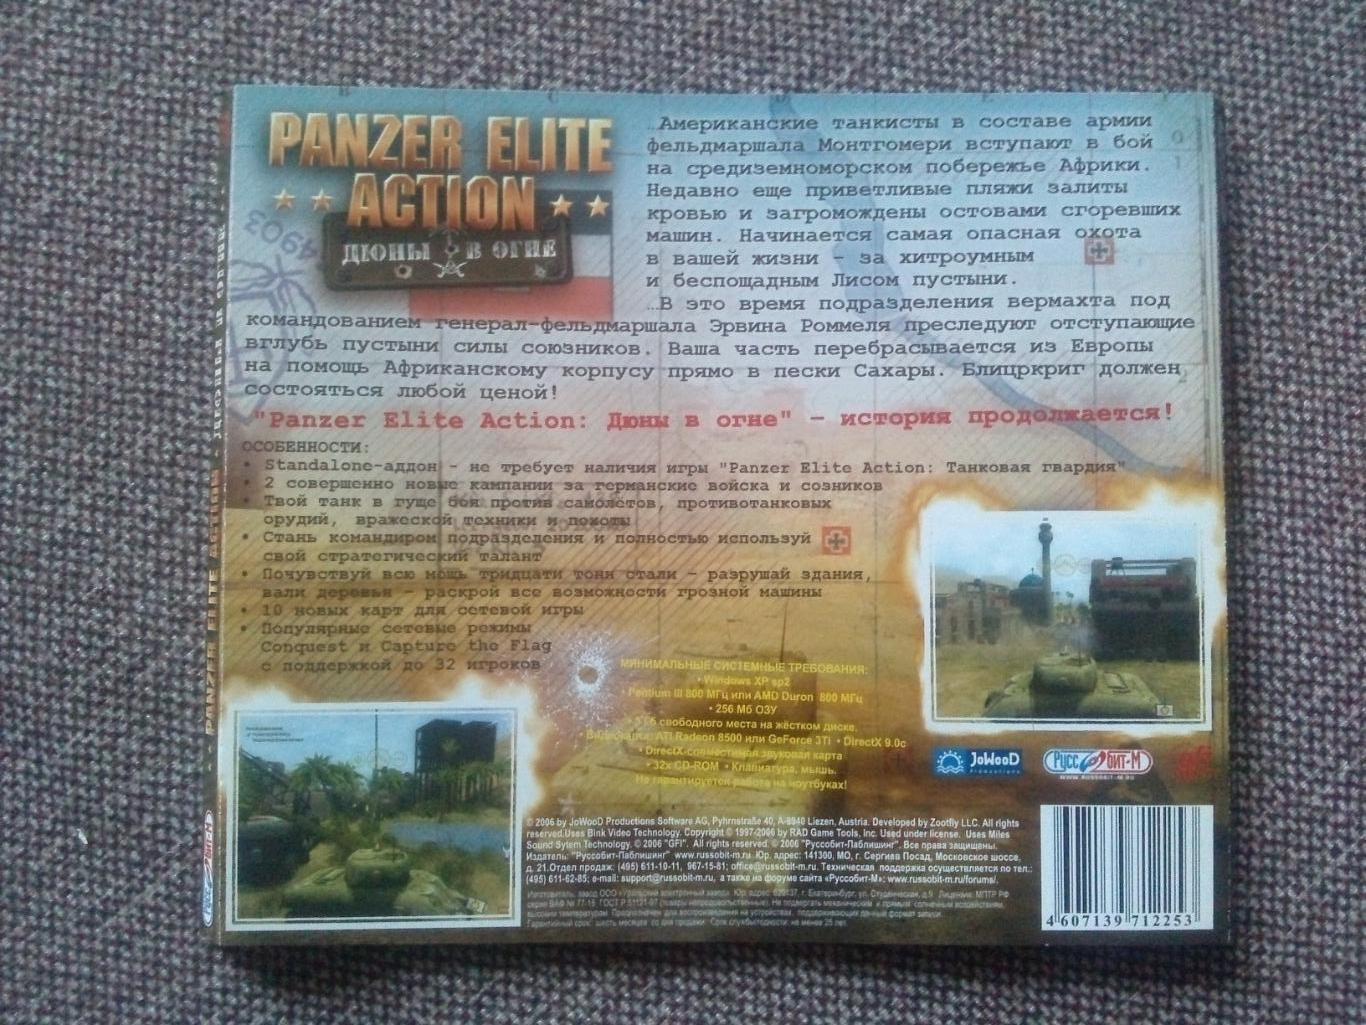 PC - DVD : Panzer Elite Action (Дюны в огне) Танковый симулятор Танки 2 CD 7